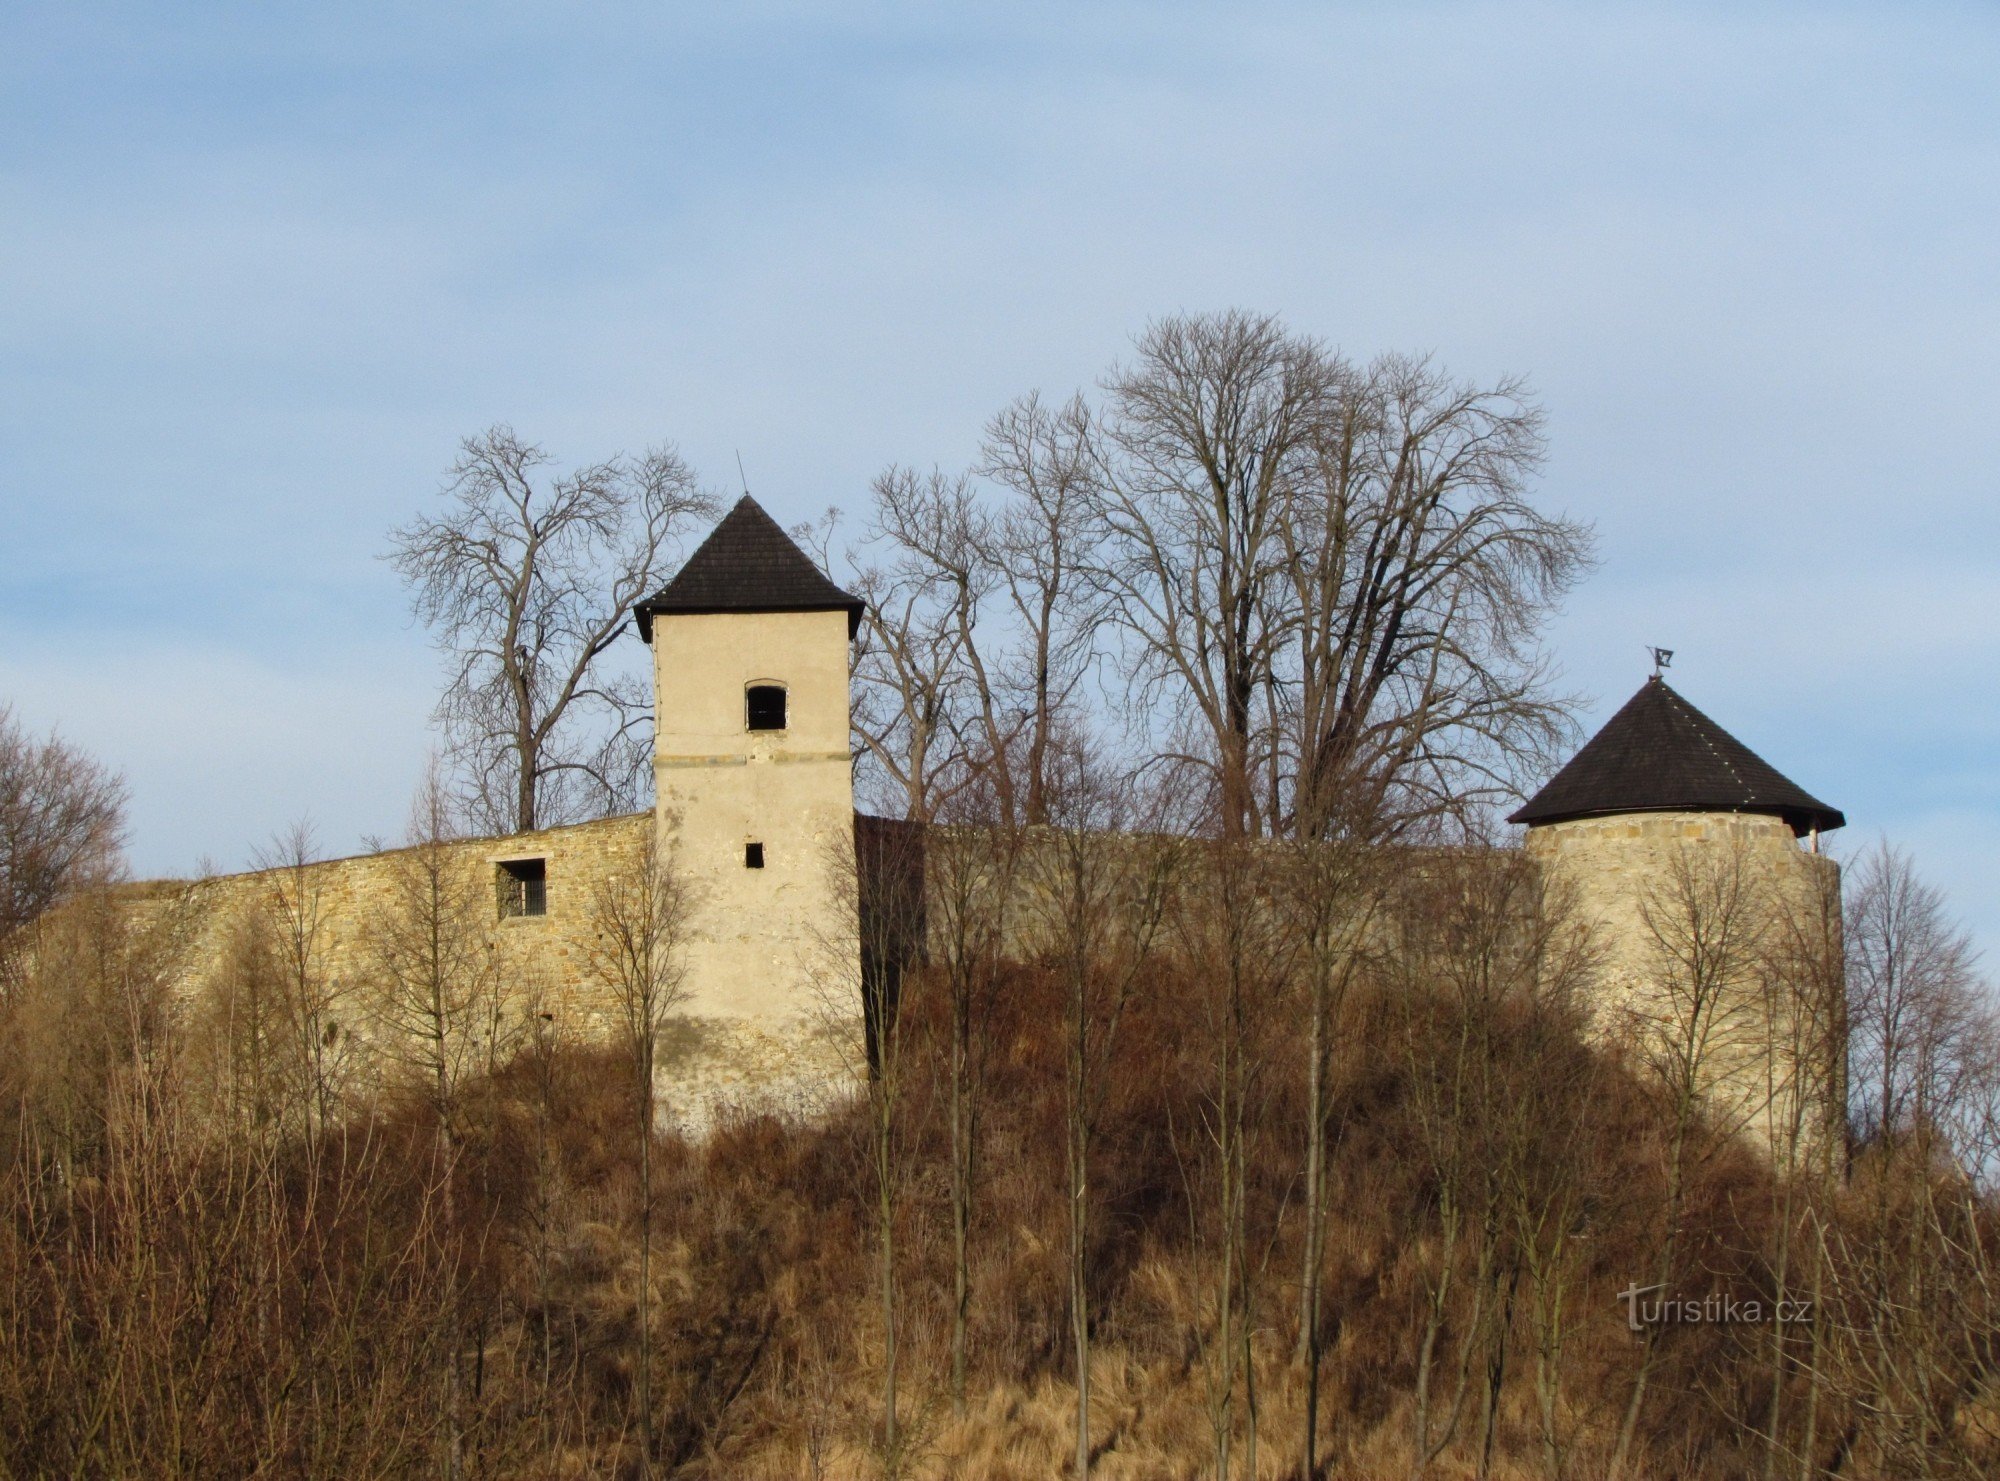 Άποψη του Κάστρου Brumovsk, της πόλης και των συνορευτικών Λευκών Καρπαθίων